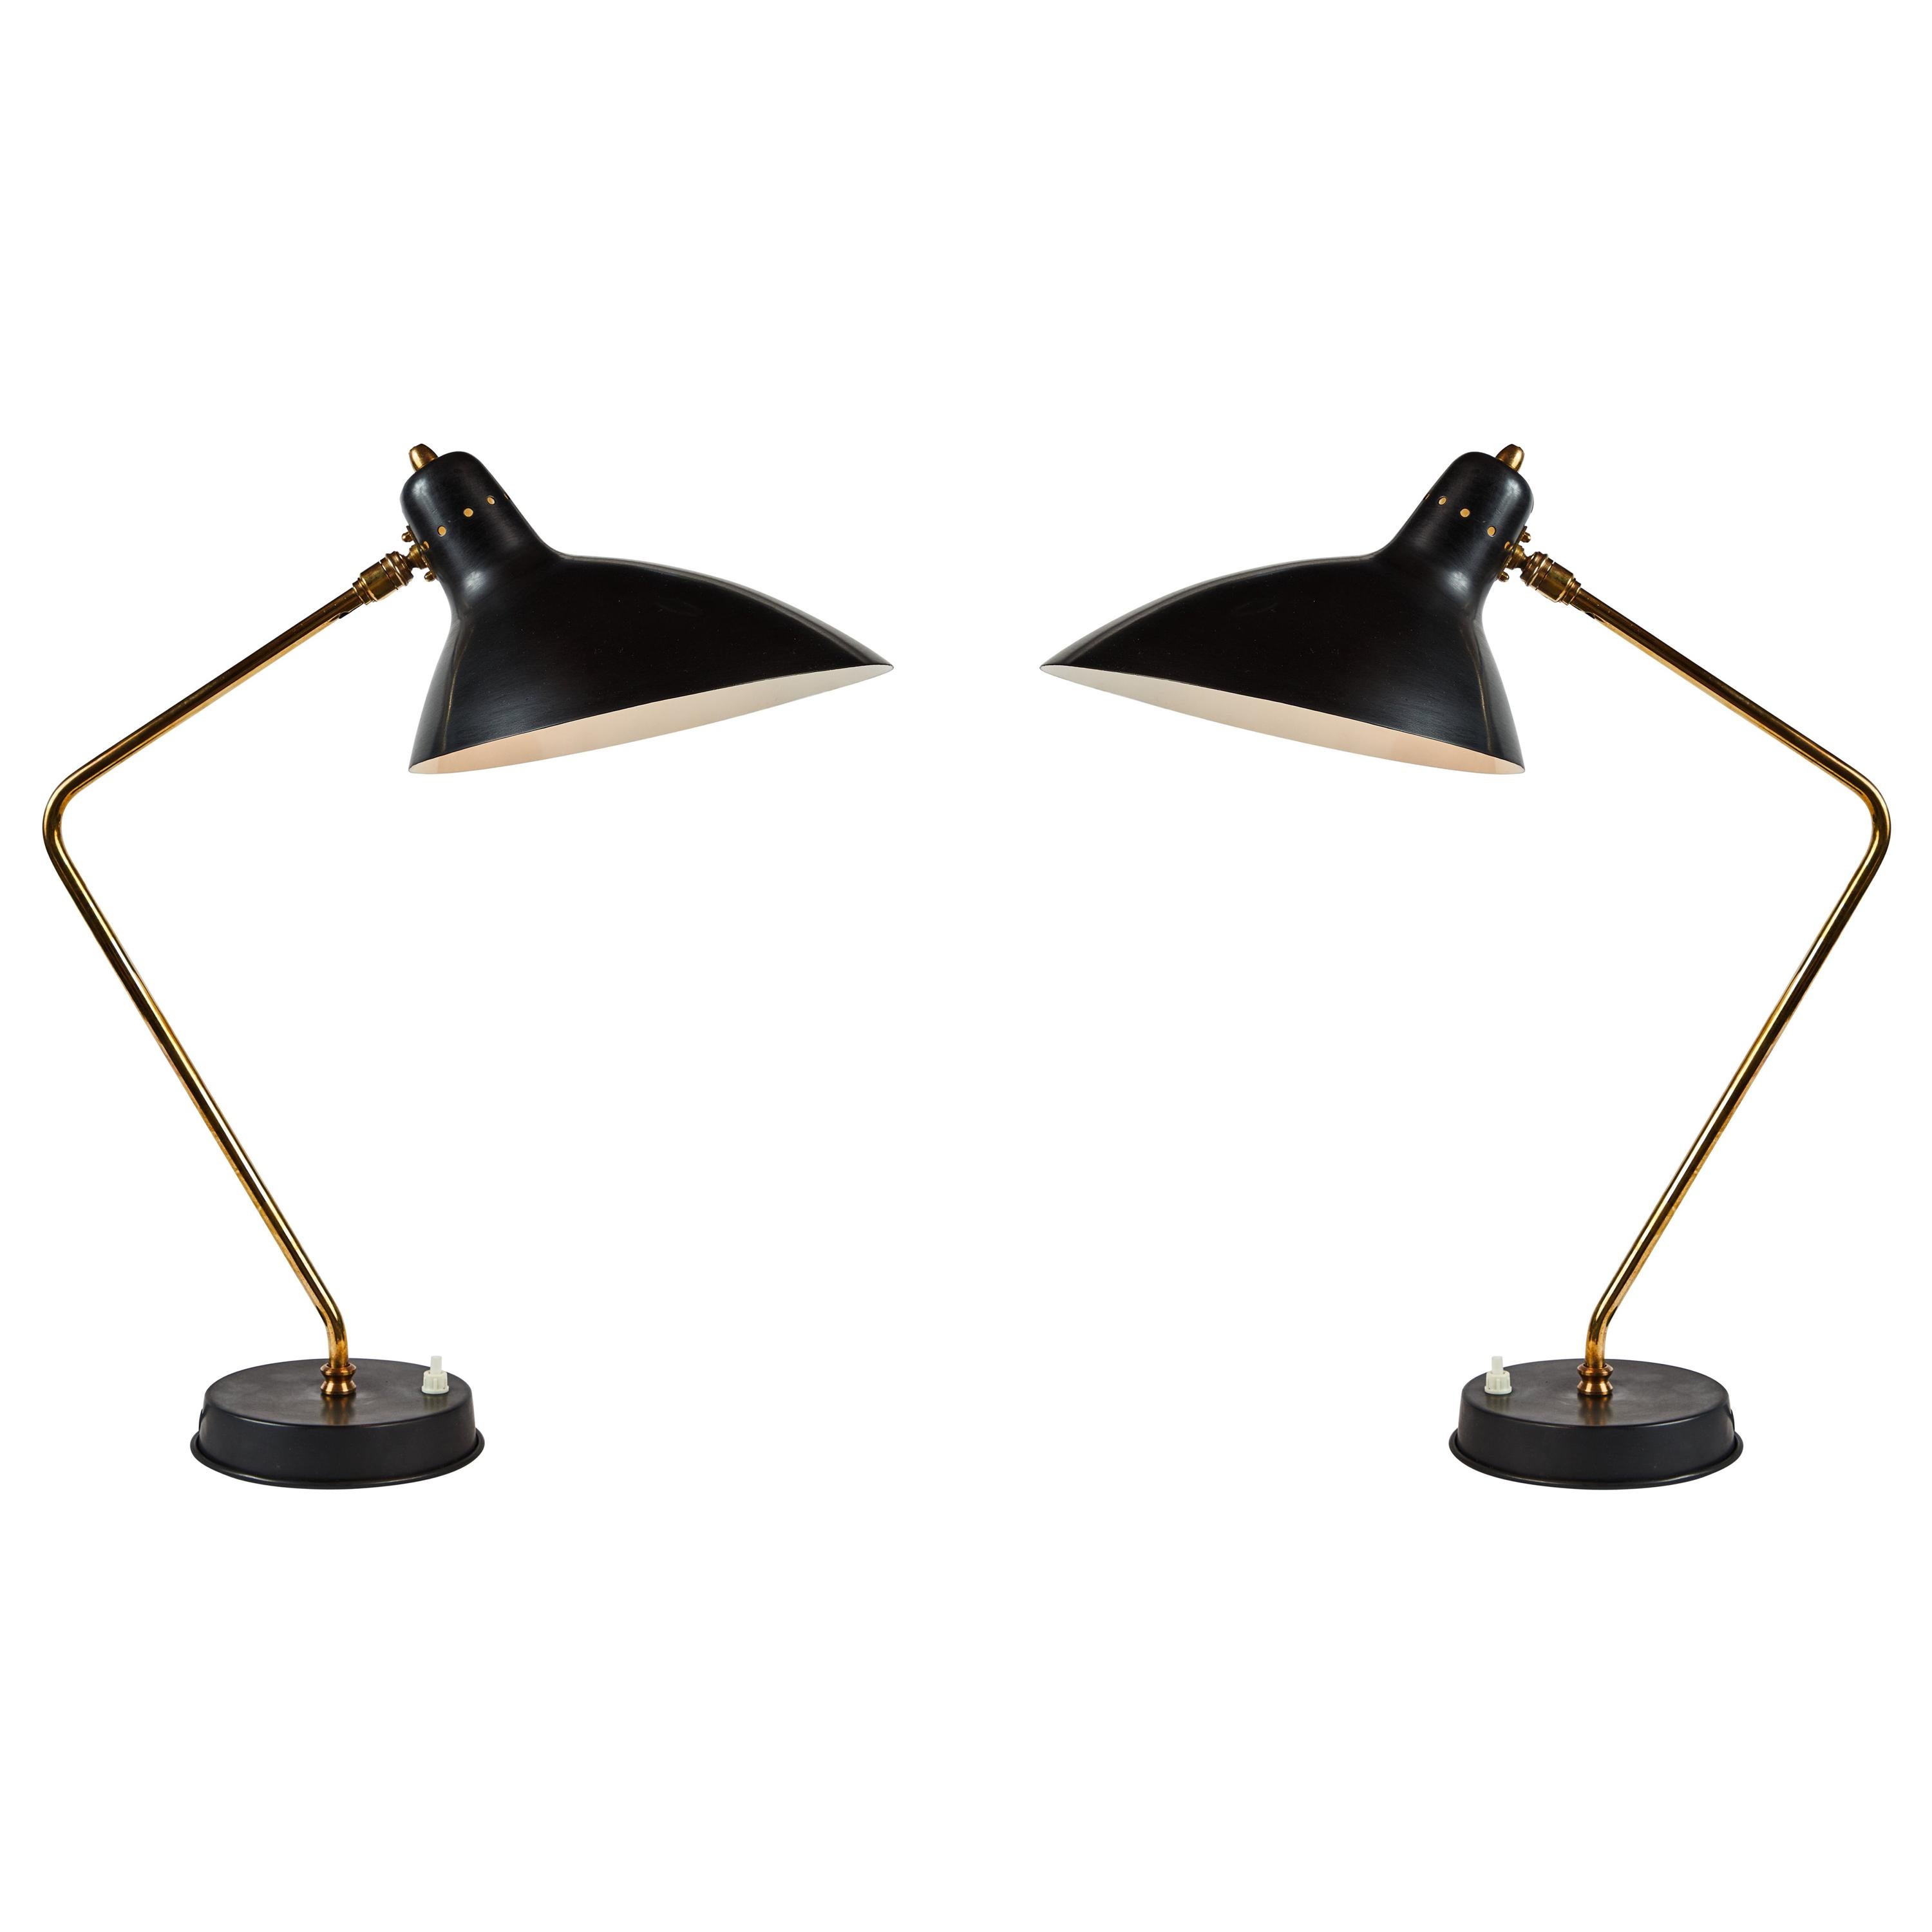 Pair of 1950s Boris Lacroix Table Lamps